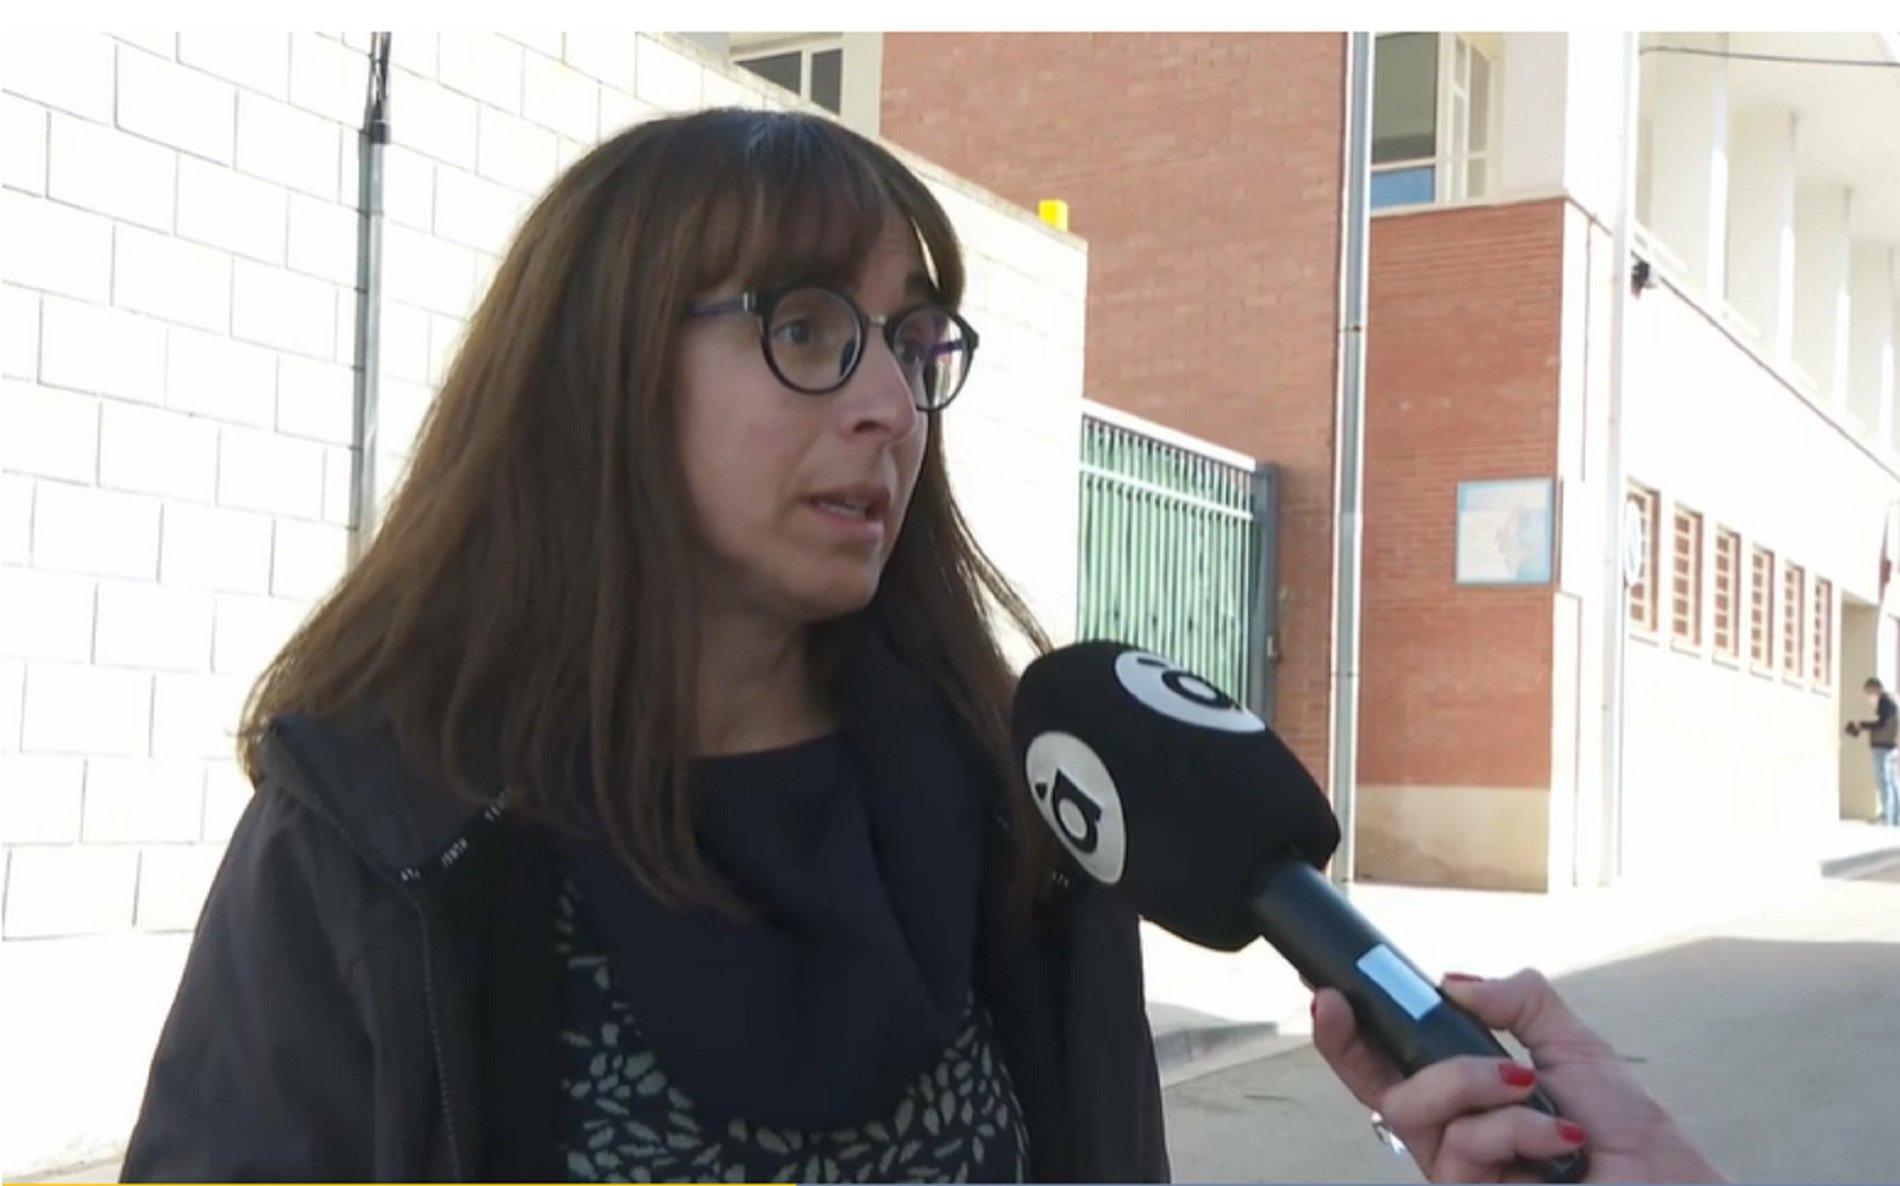 Un médico en Benilloba: "Si no me hablas en castellano, no té atenderé"